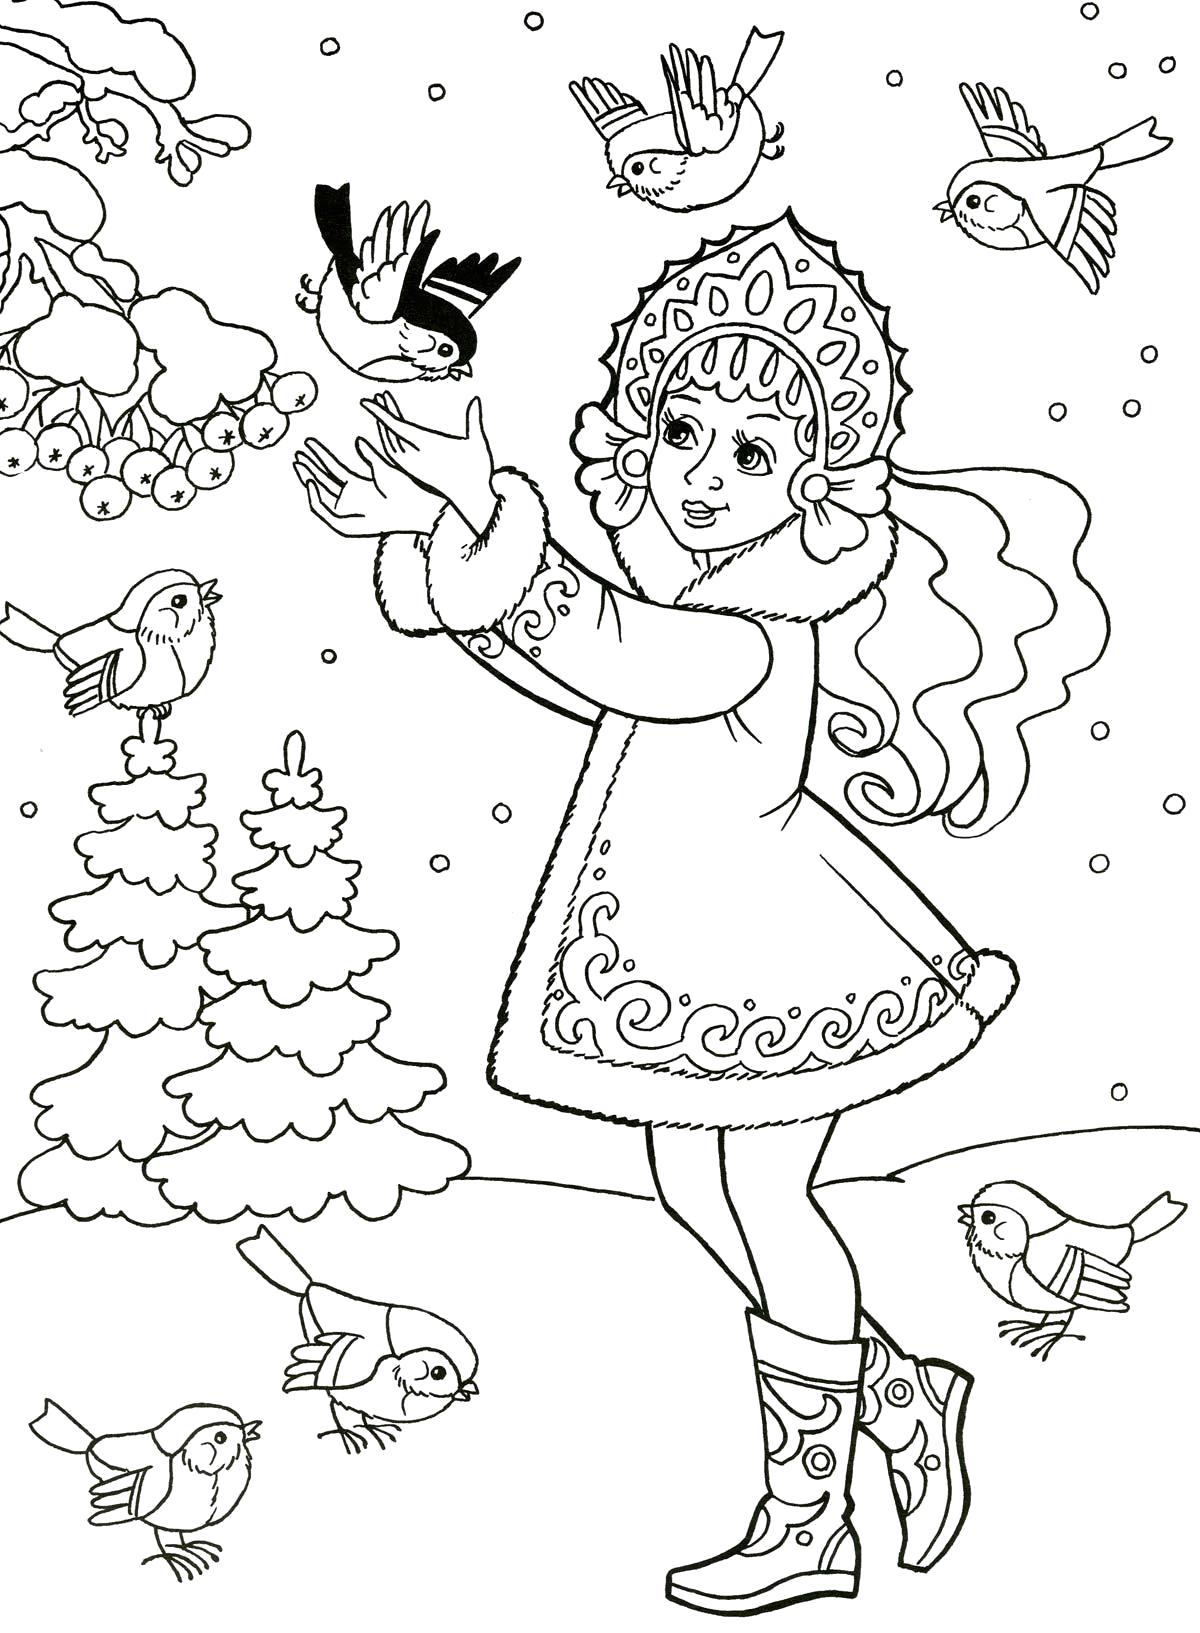 Раскраски подающий снег, снежинки, снега для детей, для занятий в начальной школе  Снегурочка кормит птиц в зимнем лесу